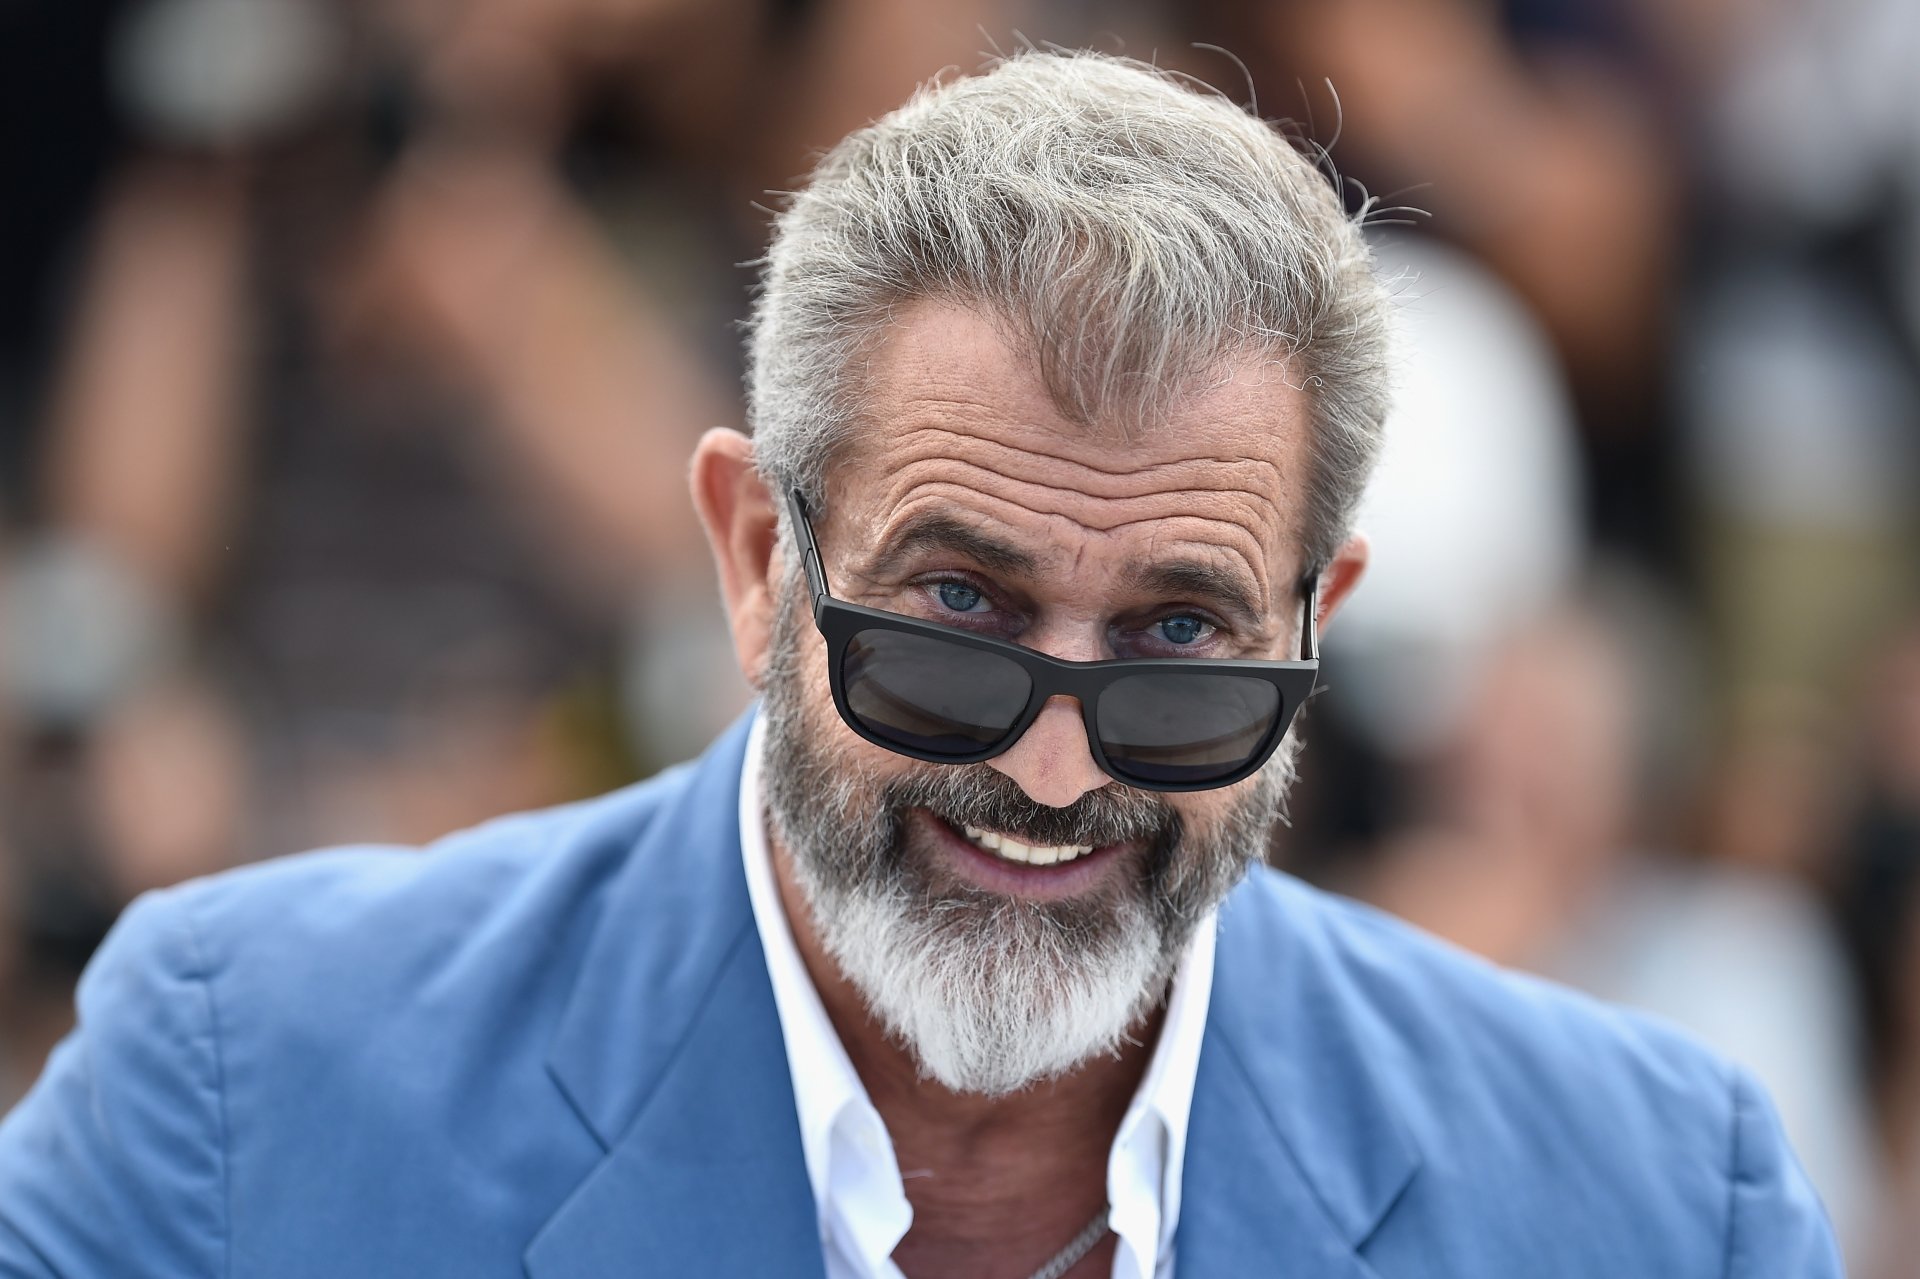 Actor de “Scandal” cuestiona el éxito de Mel Gibson tras actitudes racistas